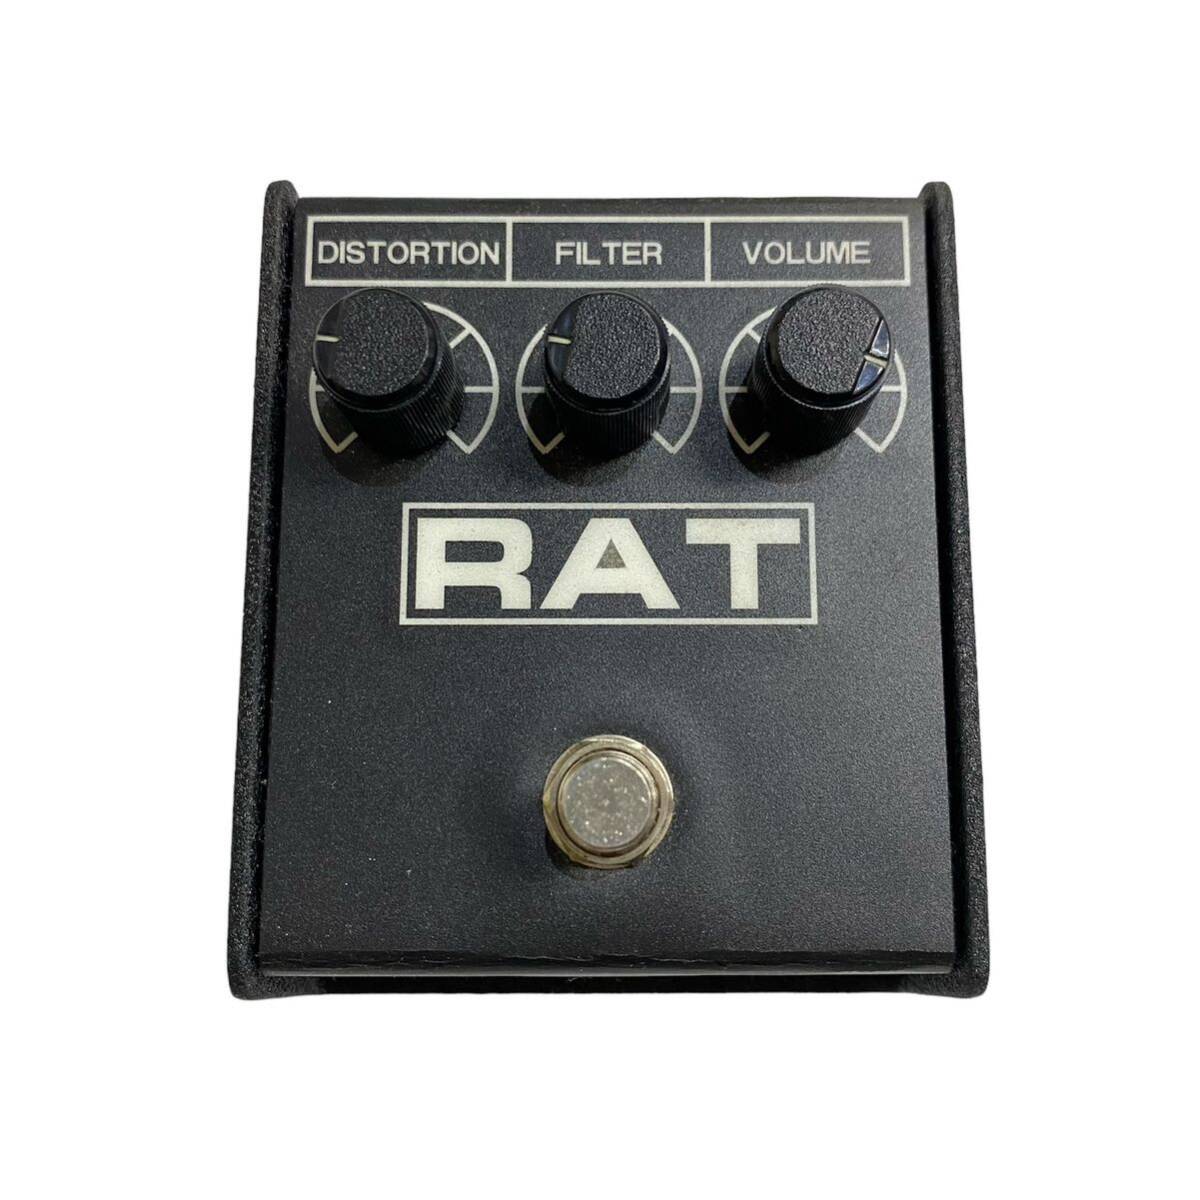 RAT PROCO ディストーション エフェクター ラット RT-298322 機材 器材 楽器_画像2